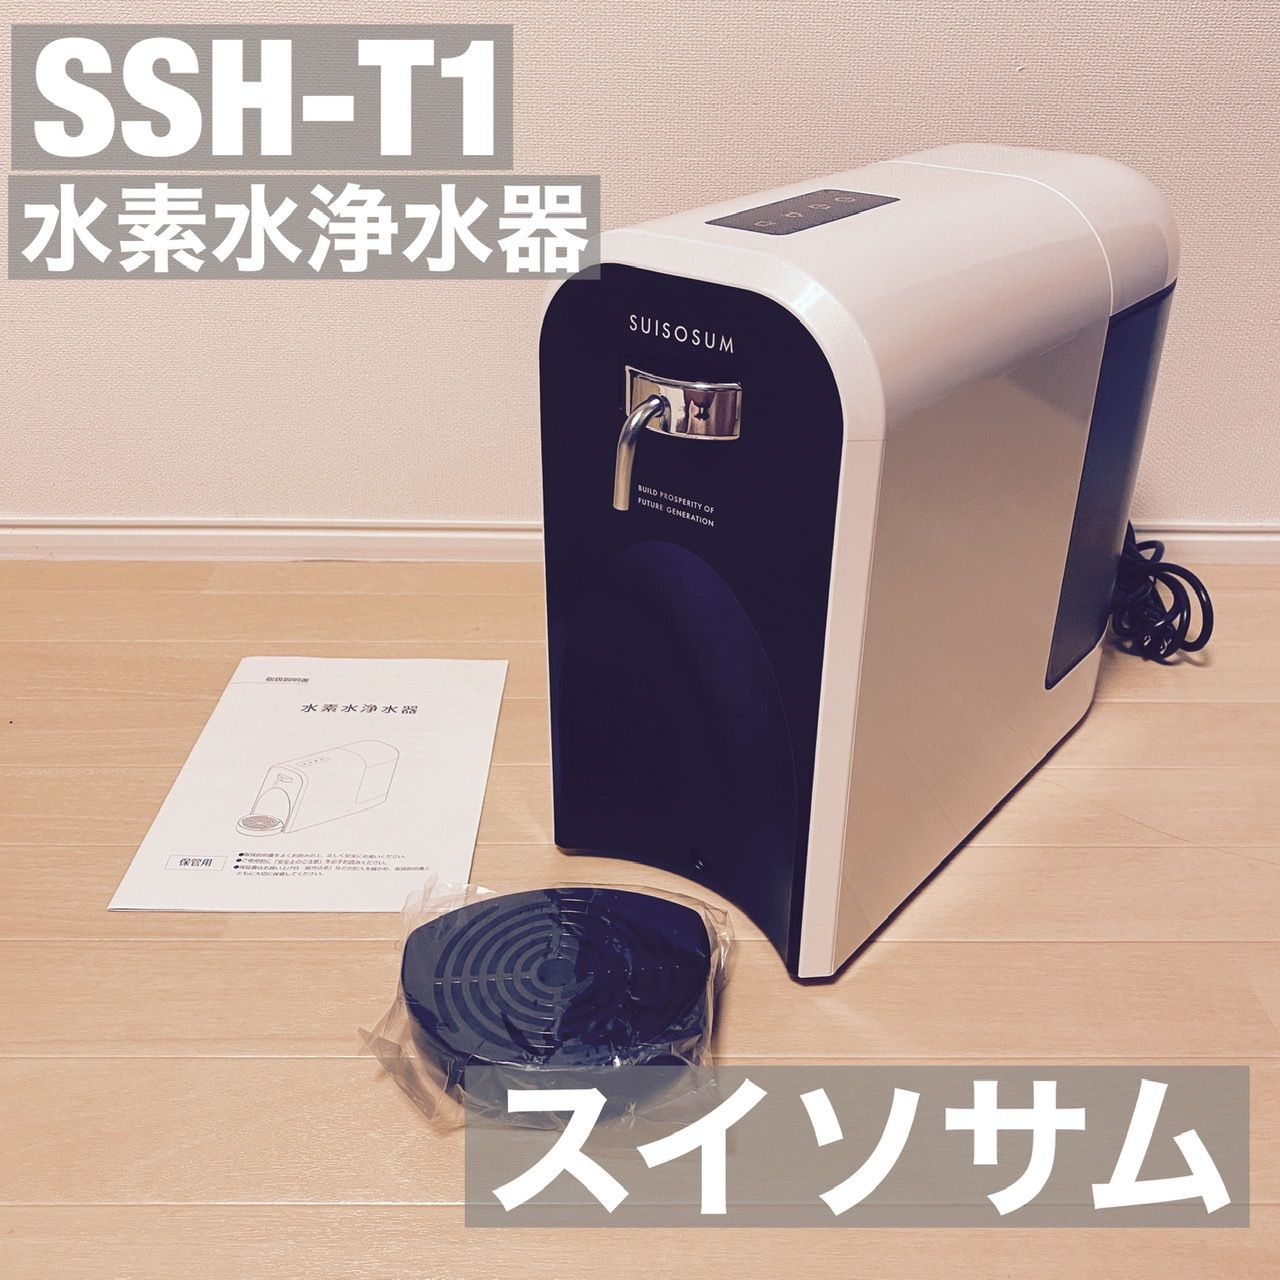 水素水浄水器SSH-T１スイソサム（水素入浴剤2袋おまけ付き）、取説、外 